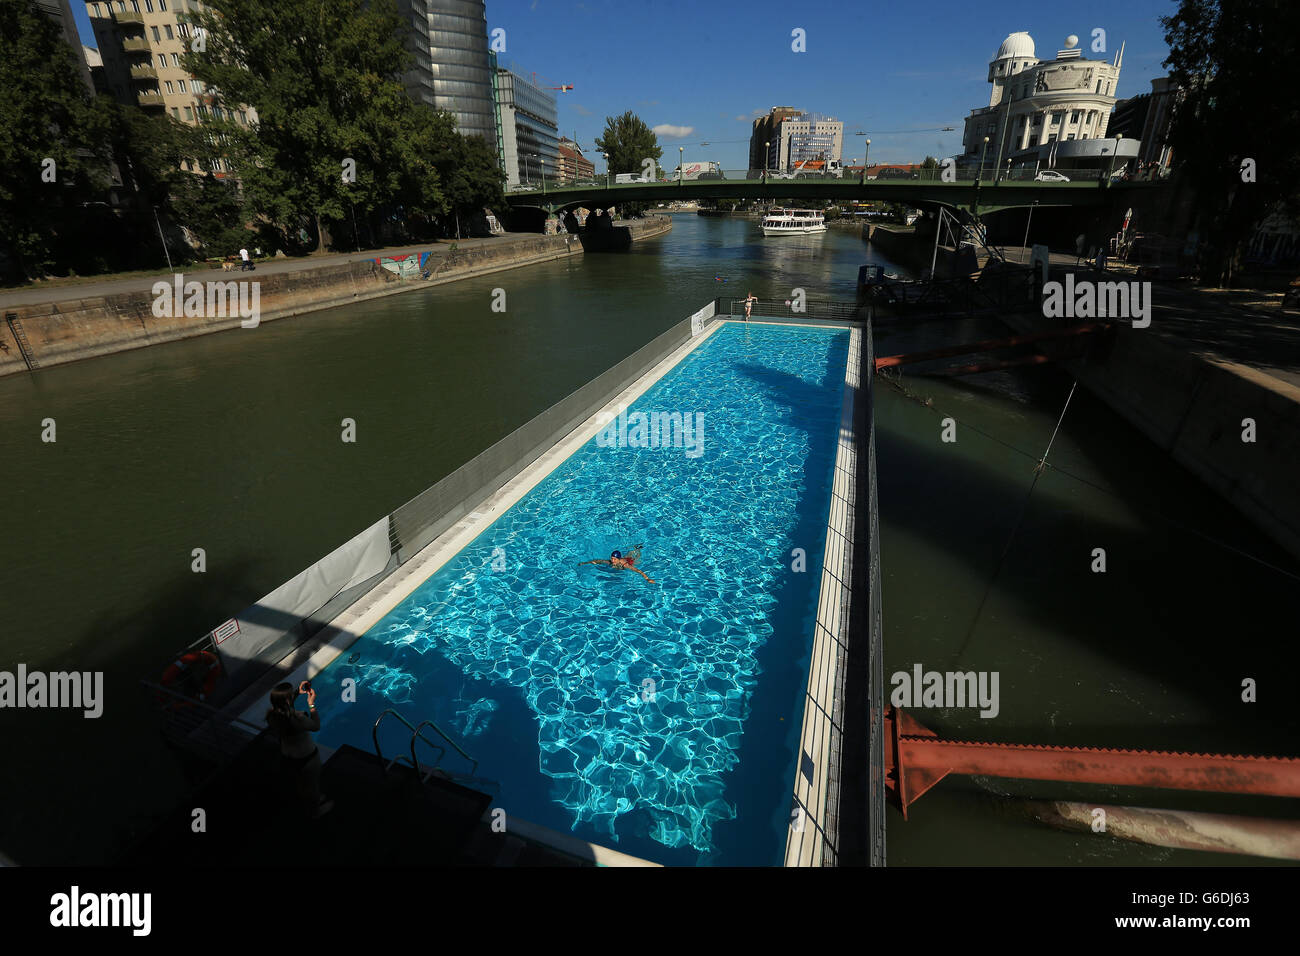 Un nadador se sumerge a bordo de una piscina flotante en el Donaukanal, Viena, Austria Foto de stock